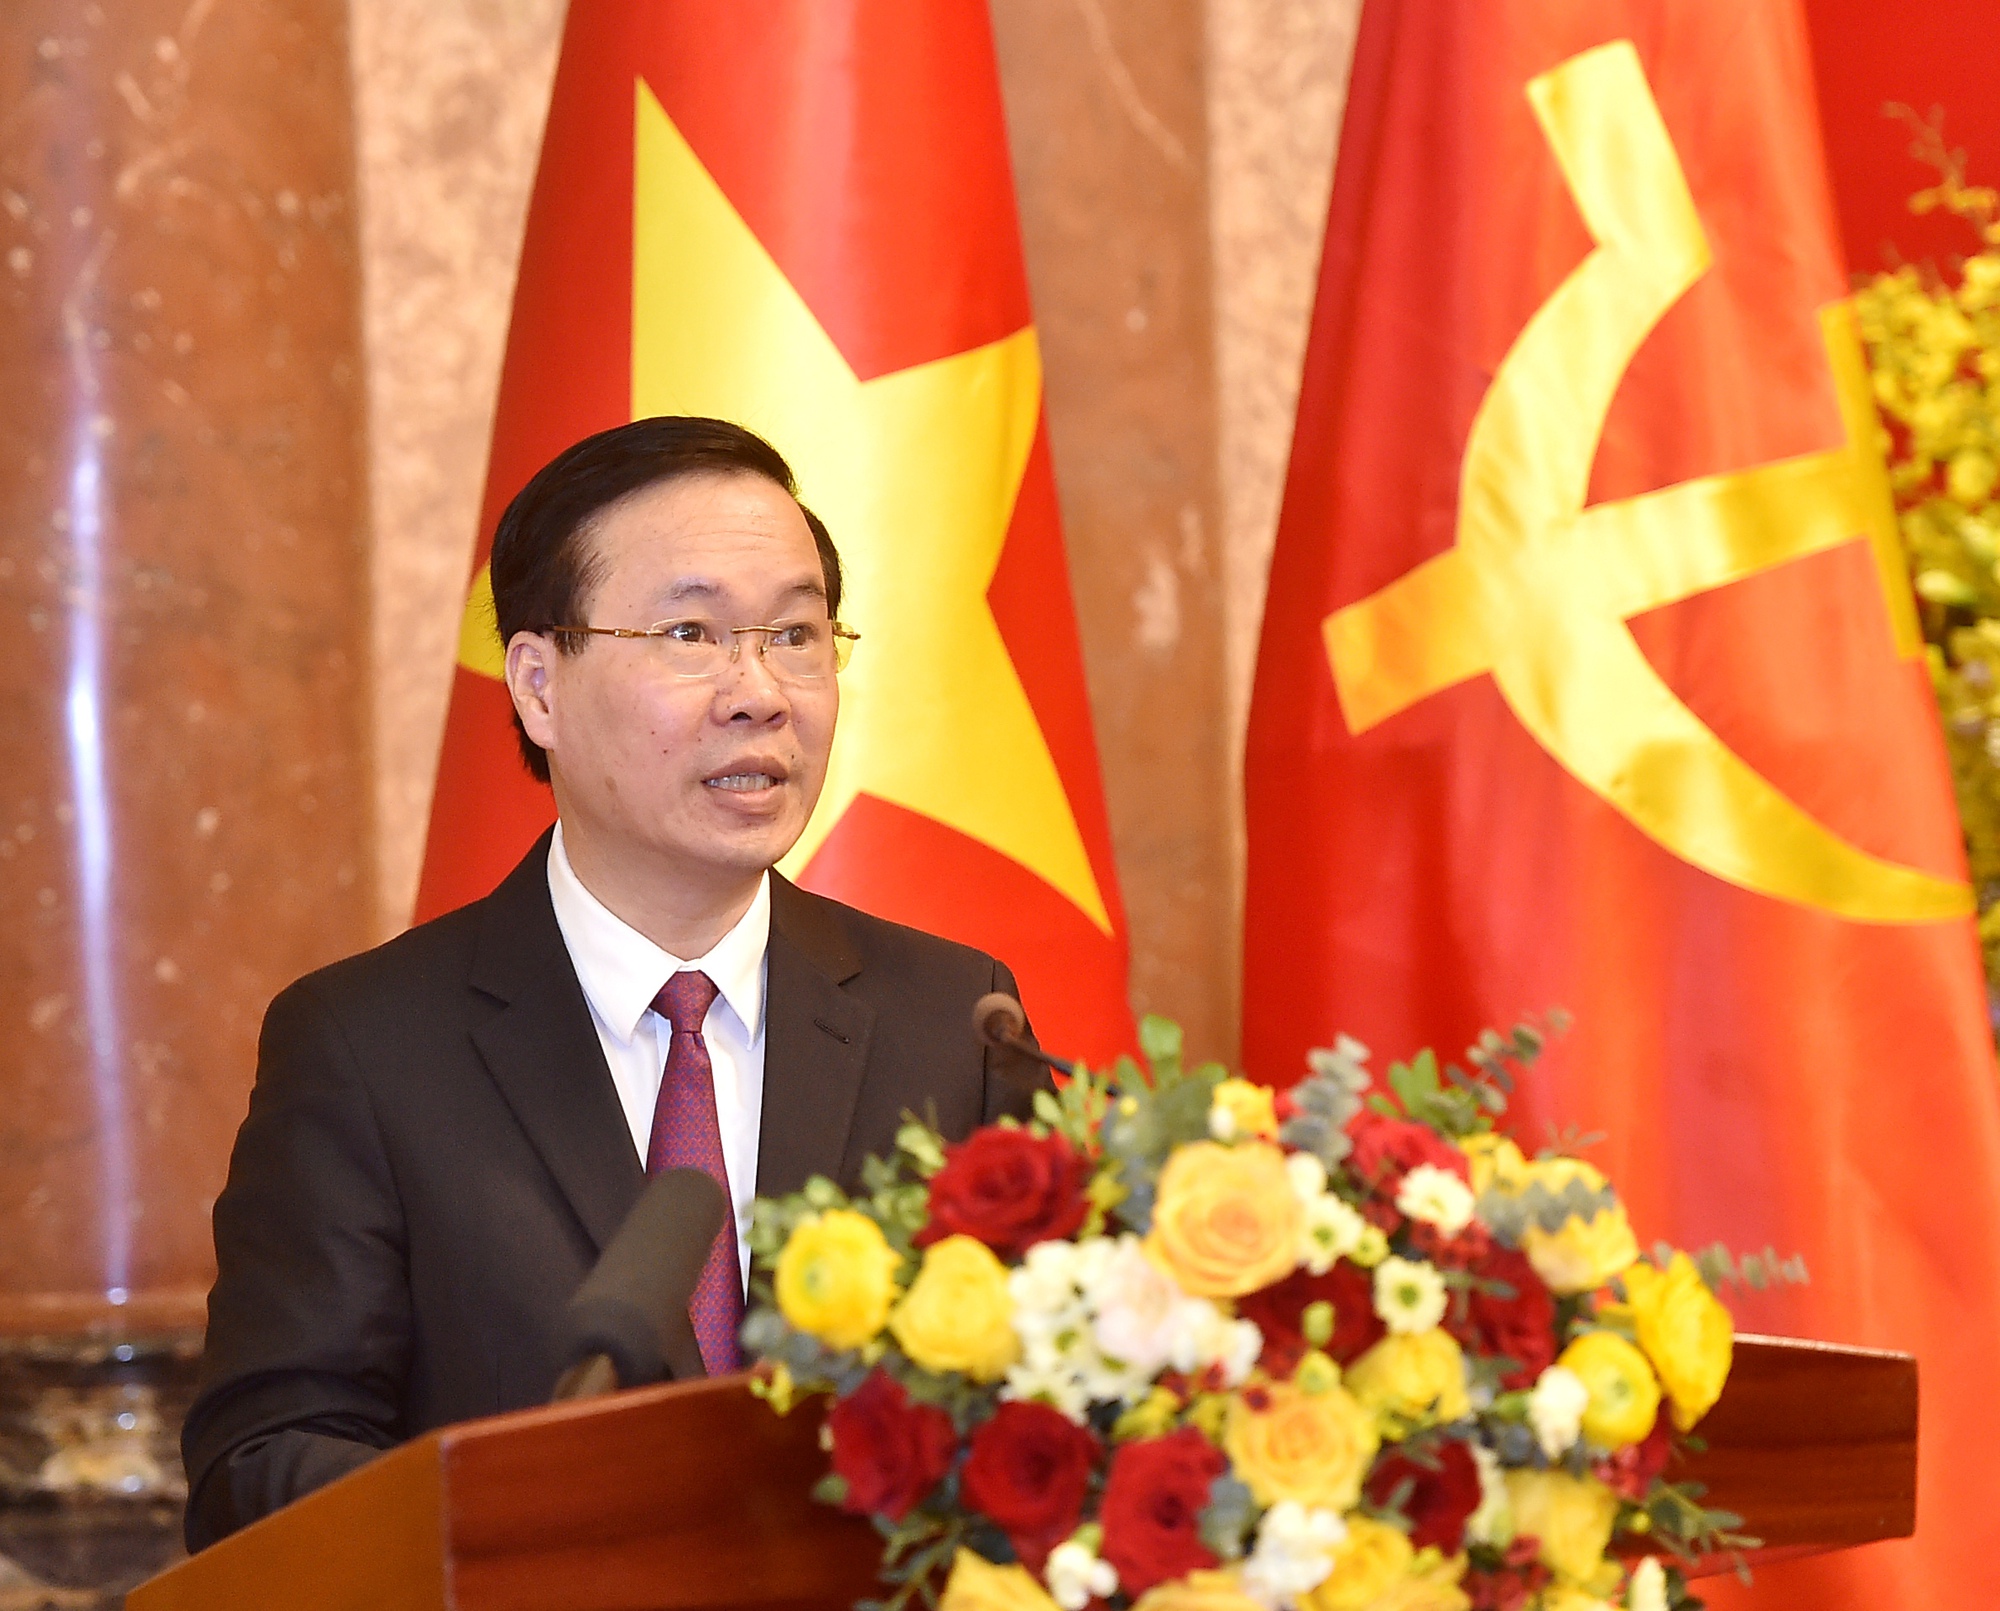 Bàn giao công tác Chủ tịch nước giữa đồng chí Nguyễn Xuân Phúc và đồng chí Võ Thị Ánh Xuân - Ảnh 1.